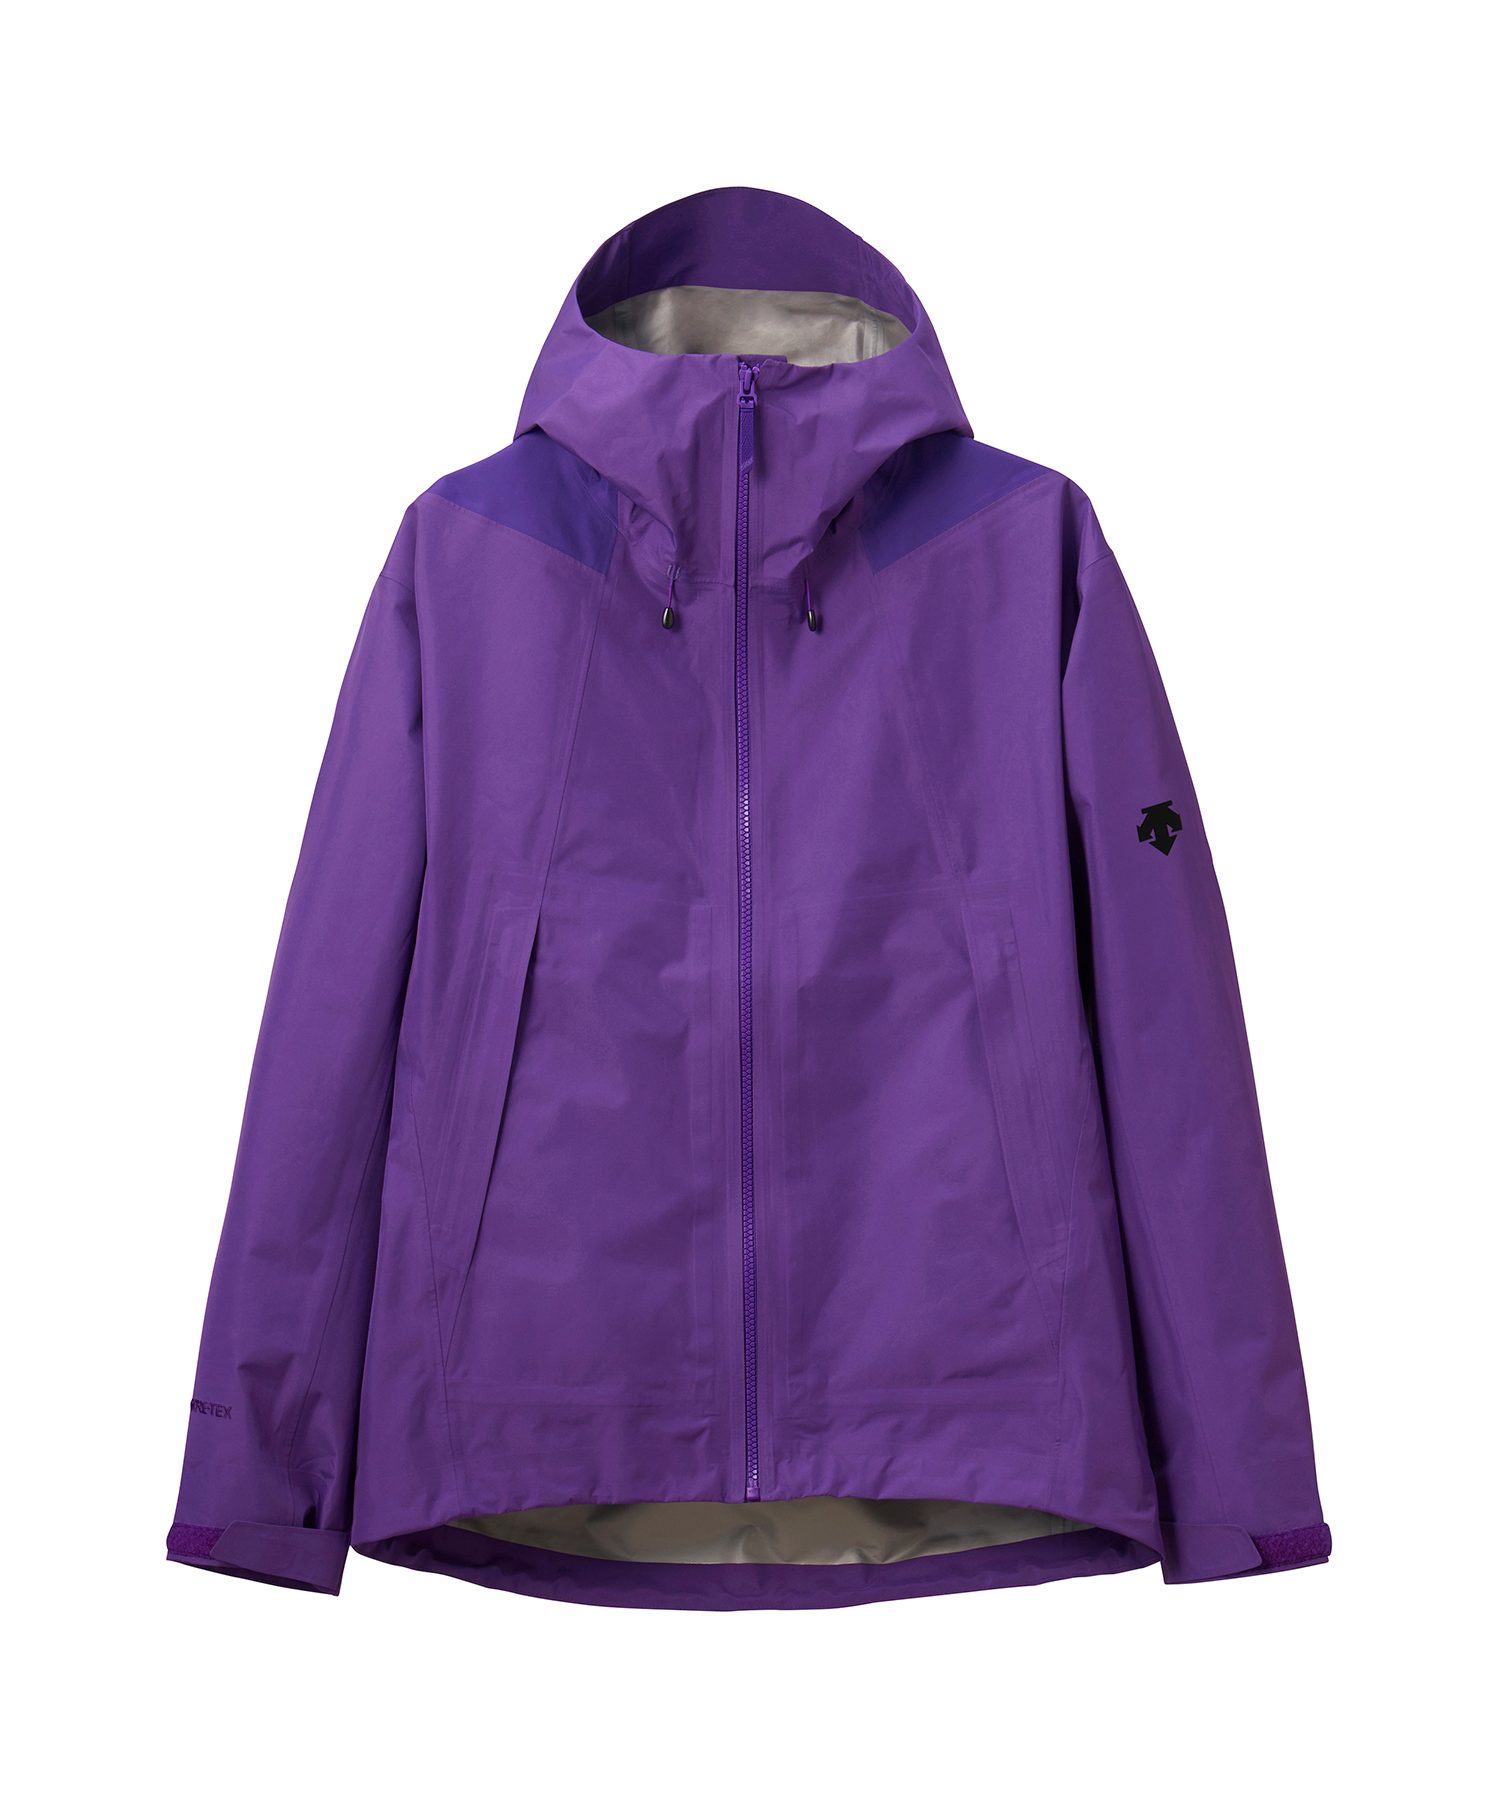 デサント DESCENTE スキーウェア ジャケット 紫 パープル Sサイズ